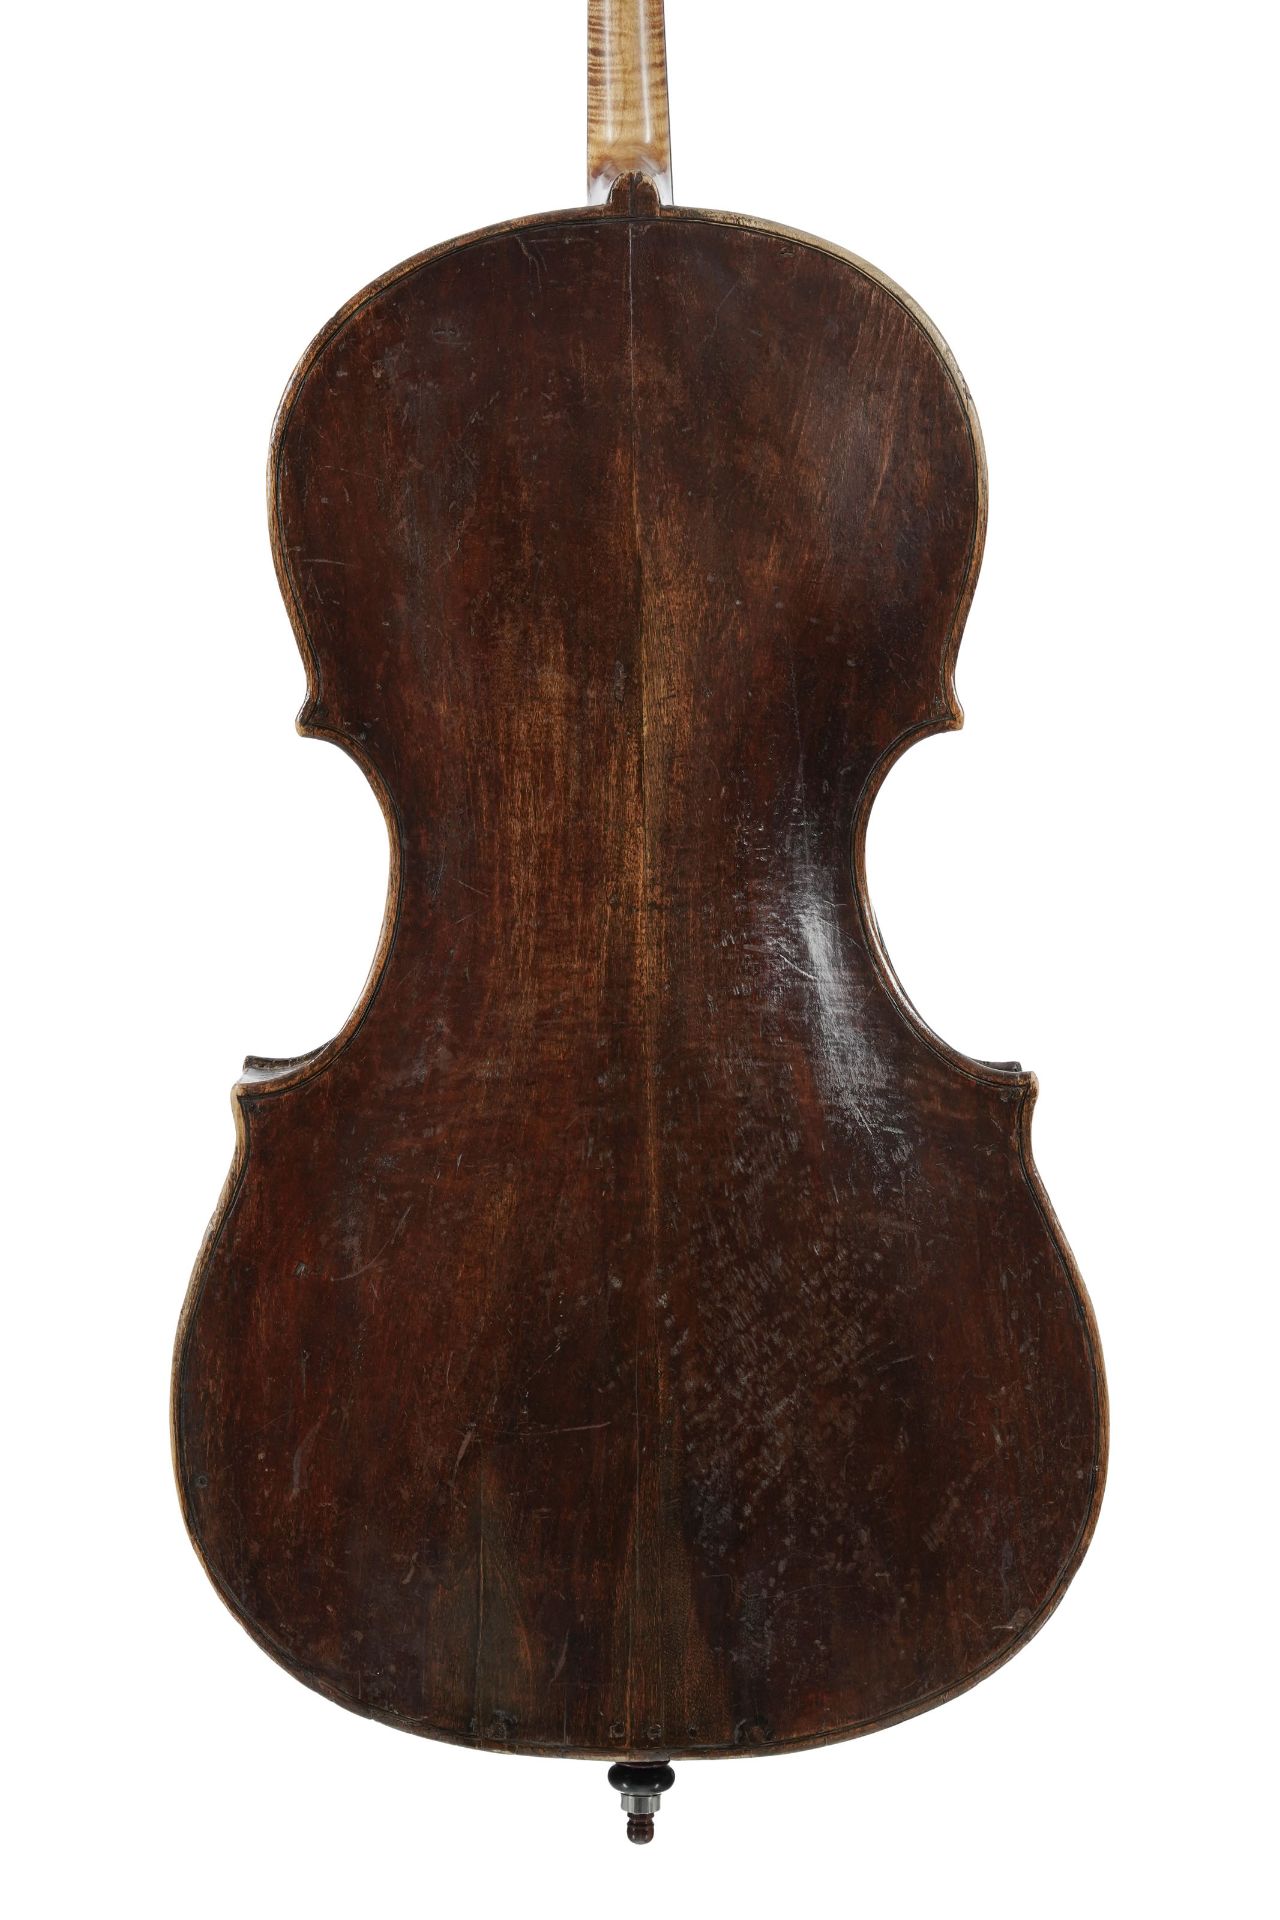 Violoncelle italien XVIIIe s. avec étiquette partiellement déchirée de Testore, restauré par Breton - Image 2 of 11